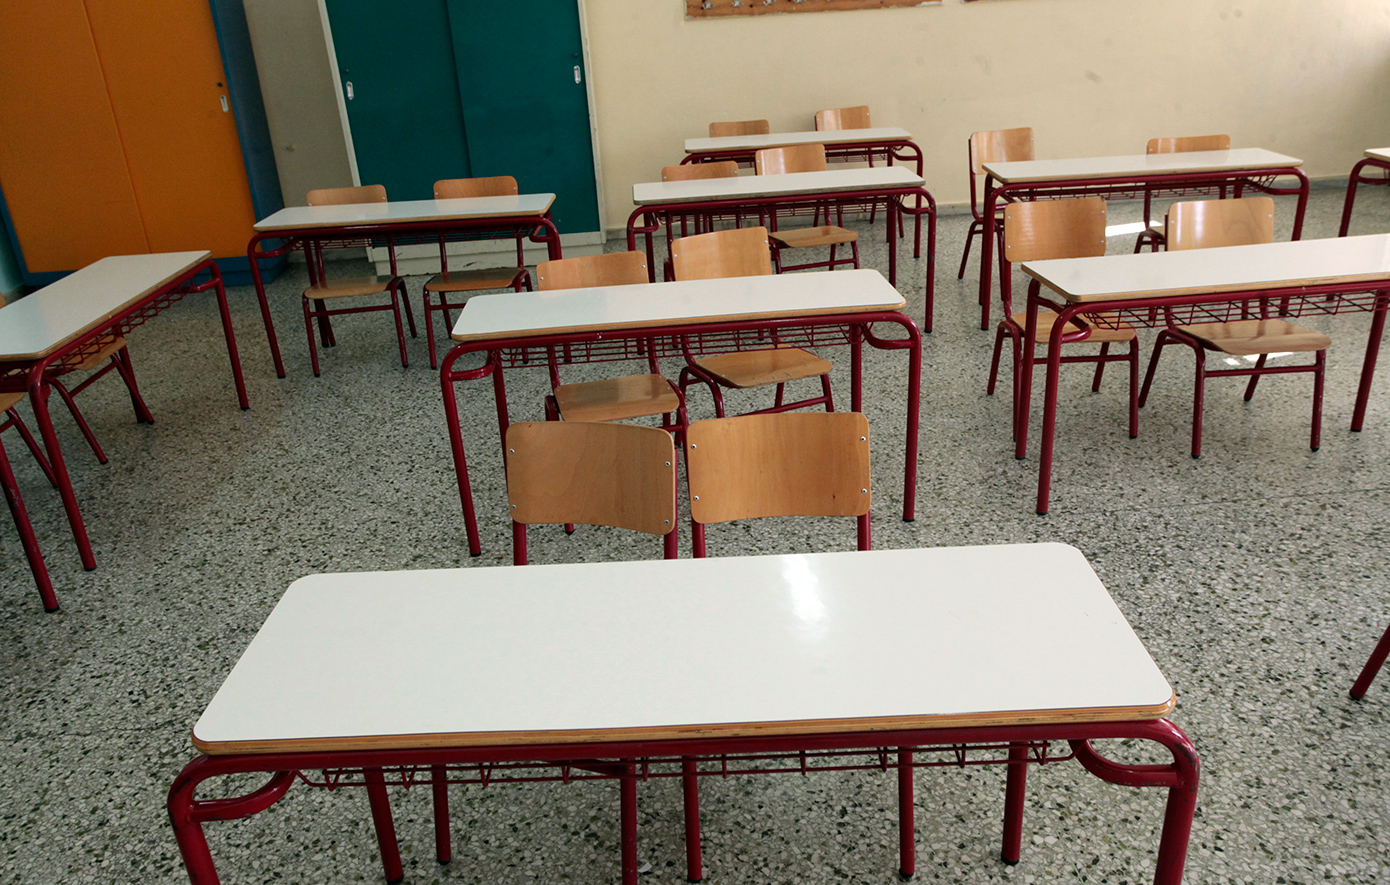 Χαμός σε σχολείο της Λάρισας: Γονείς καυγάδισαν και βρίστηκαν άσχημα μπροστά σε παιδιά